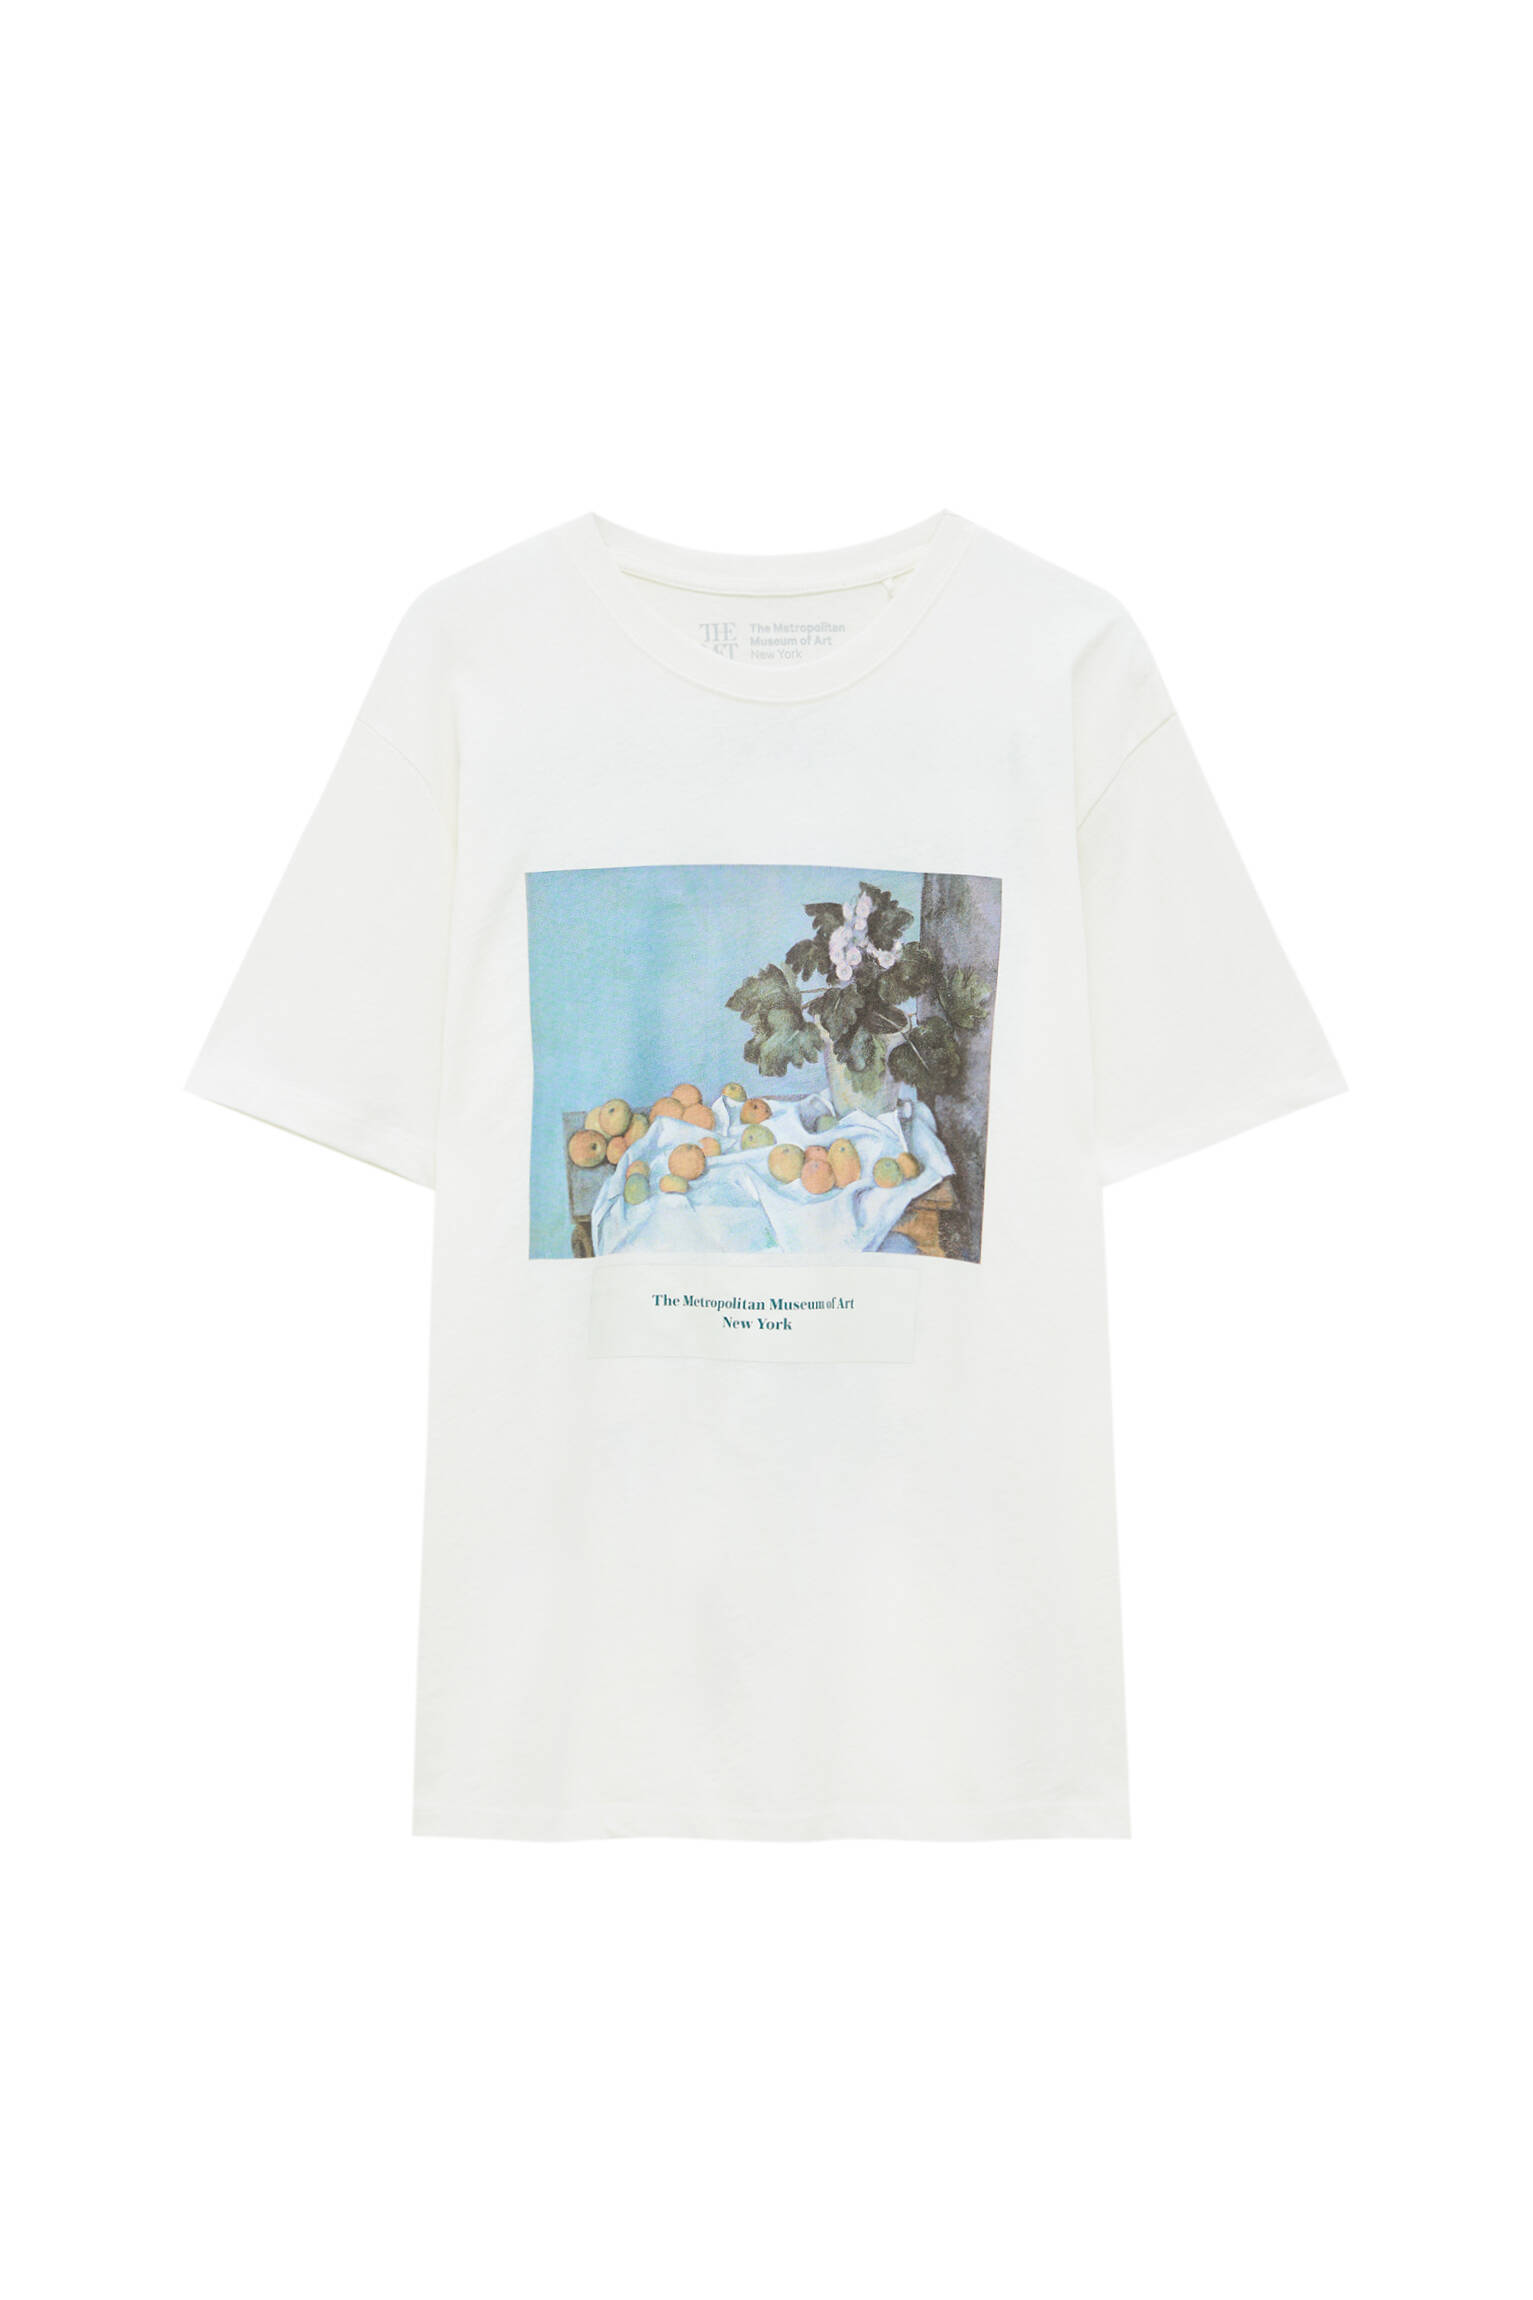 Pull&bear Homme T-shirt Blanc En Coton à Manches Courtes Et Col Rond Avec Illustration De Luvre De P